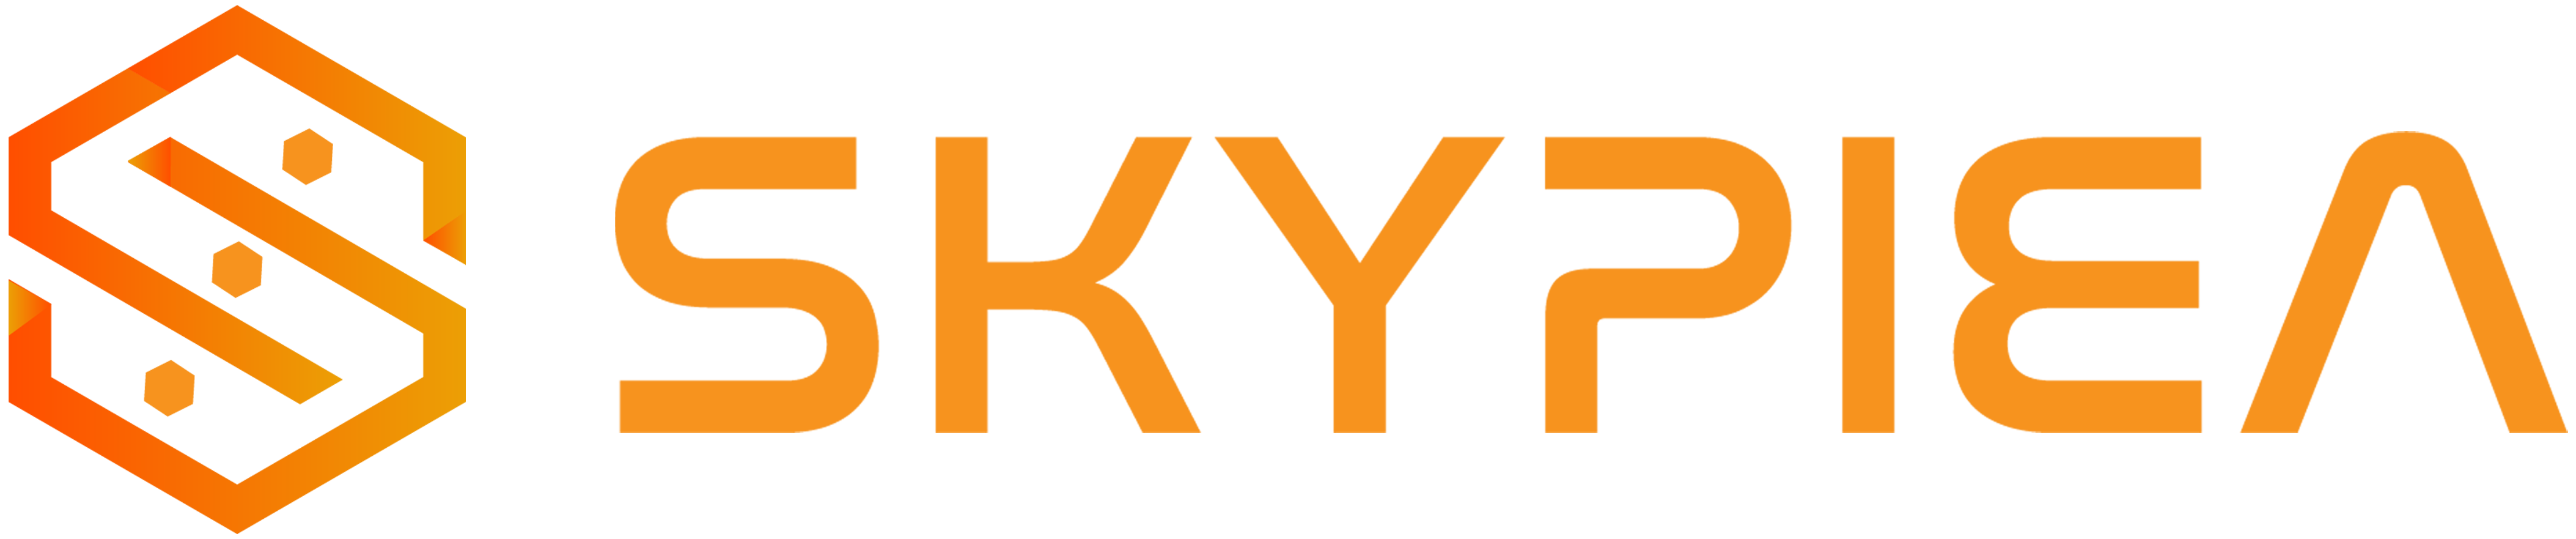 skypiea.vn, cửa hàng âm thanh chính hãng